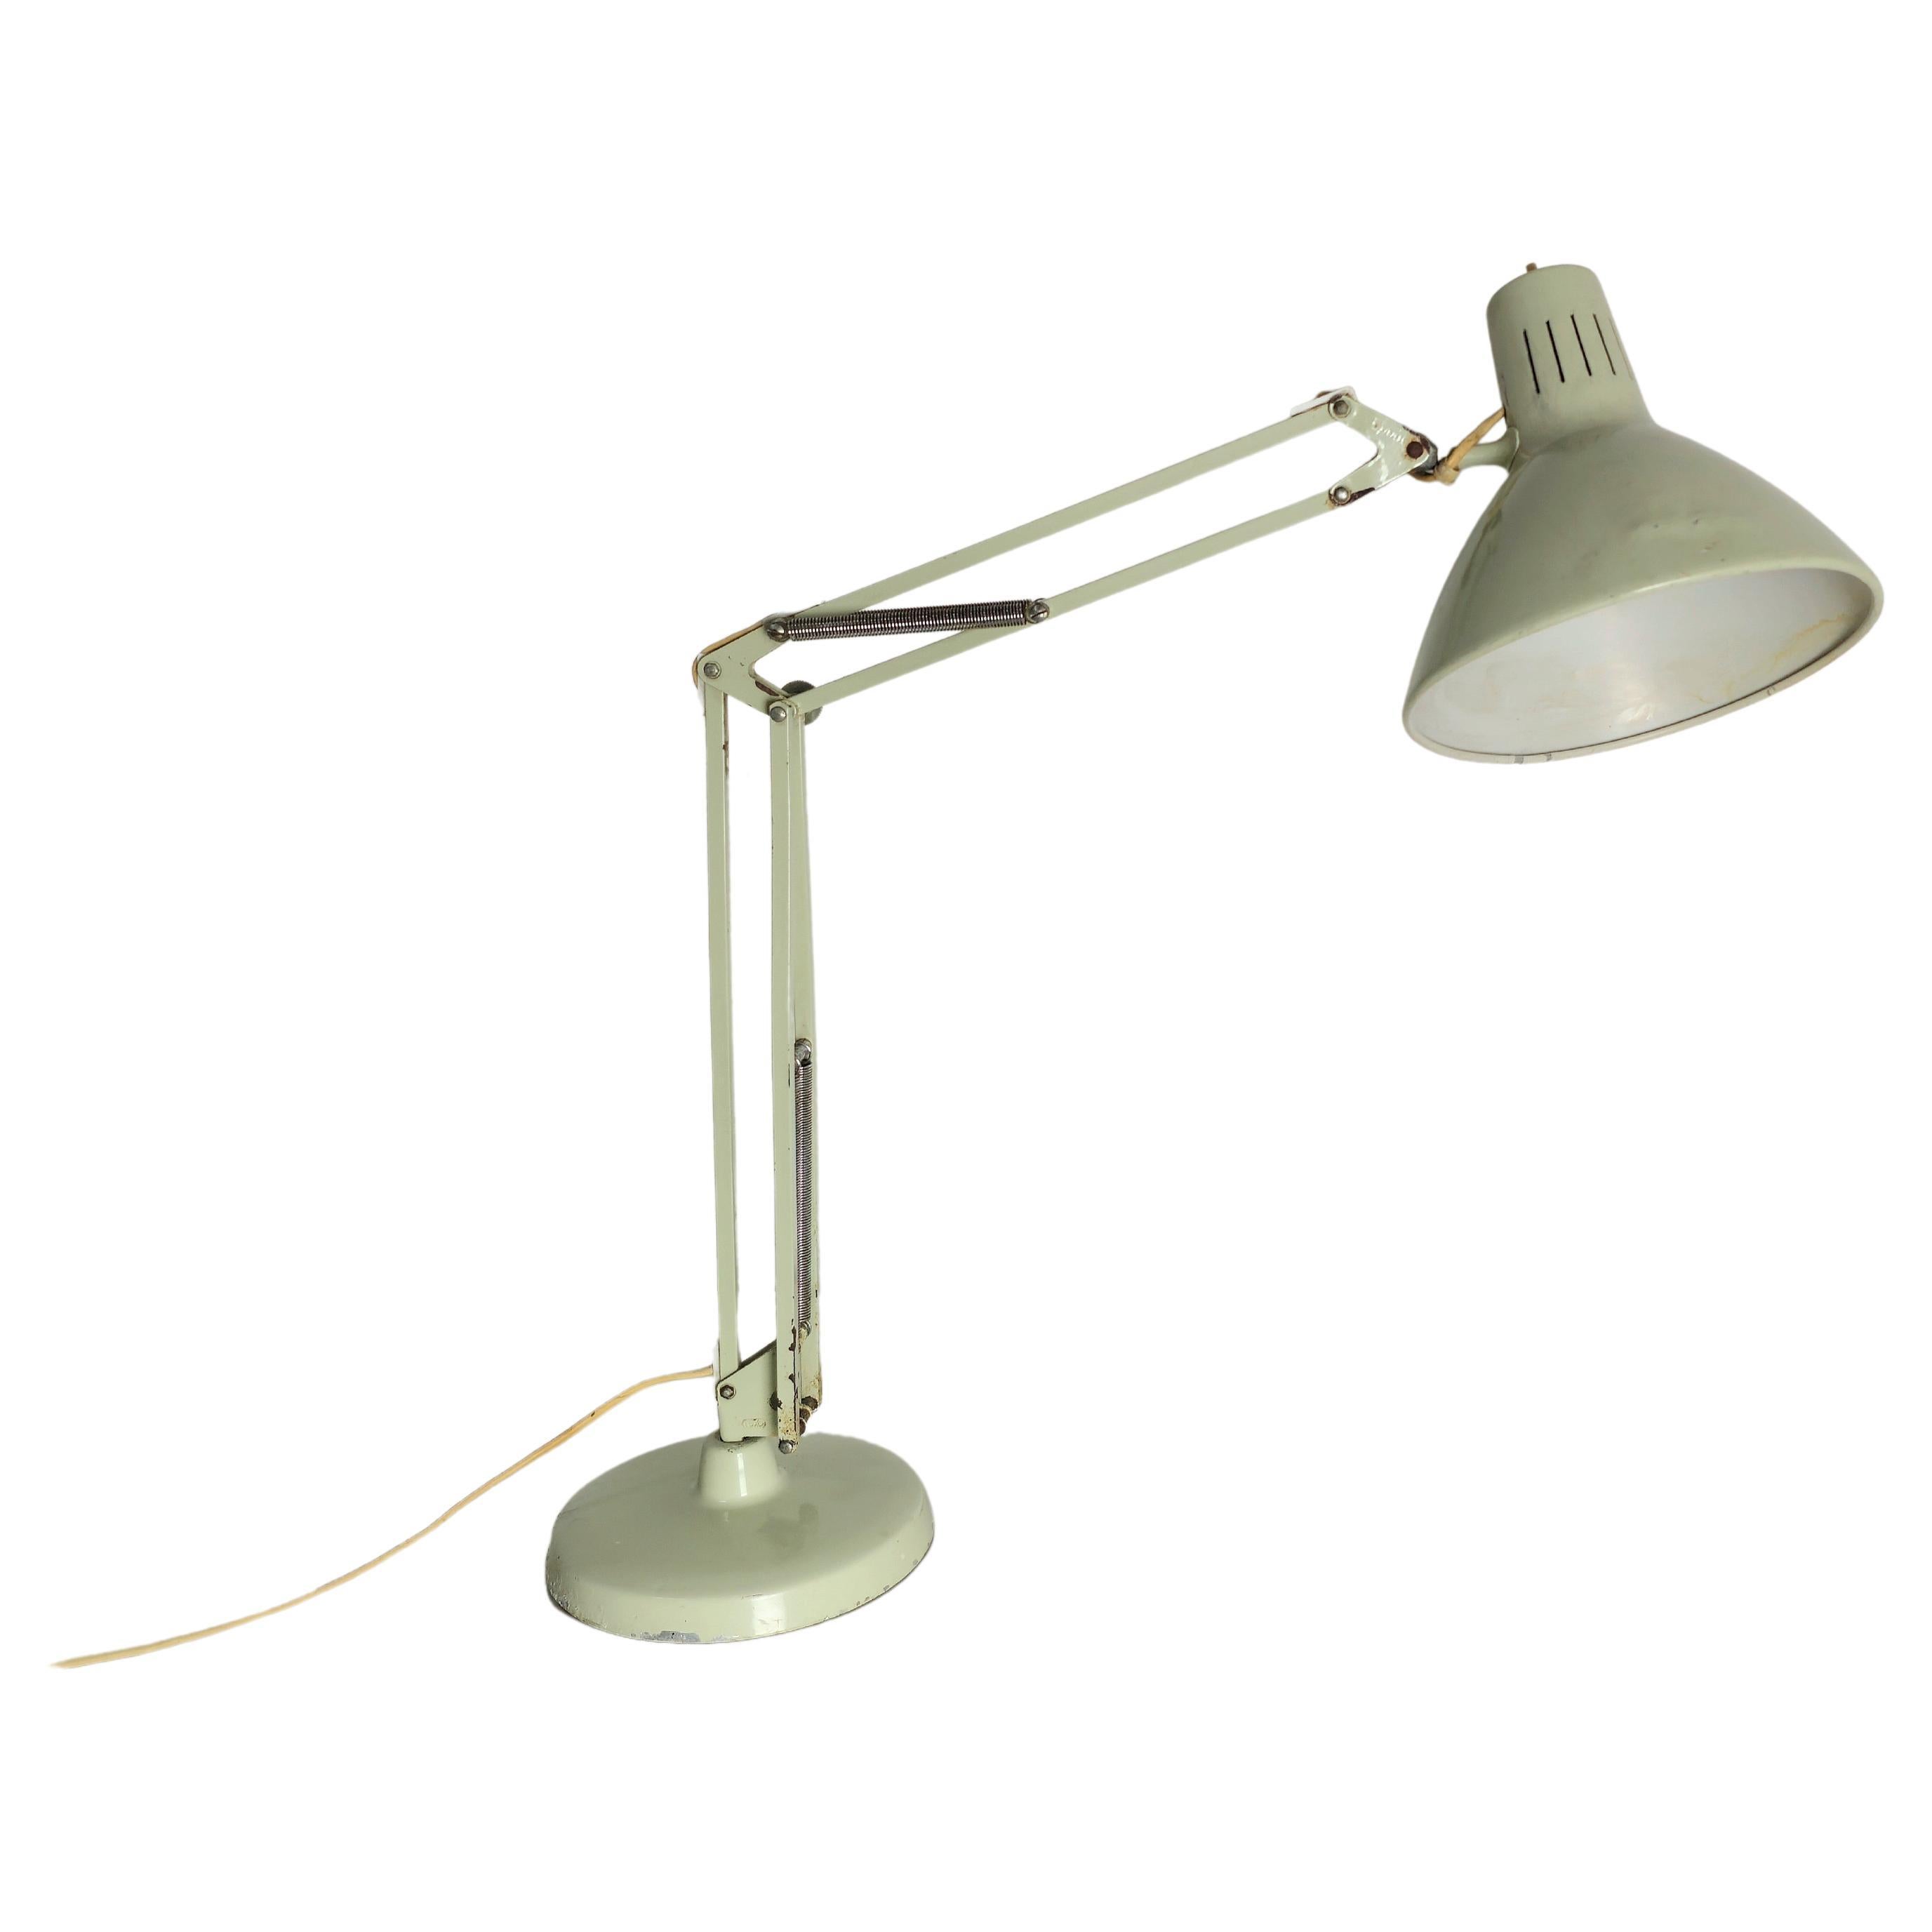 Lampe de table avec 1 ampoule E27 conçue par le designer norvégien Jac Jacobsen et produite dans les années 50 par sa société appelée Luxo. La lampe est composée d'une base circulaire et d'un mécanisme extensible en métal émaillé, ainsi que d'un